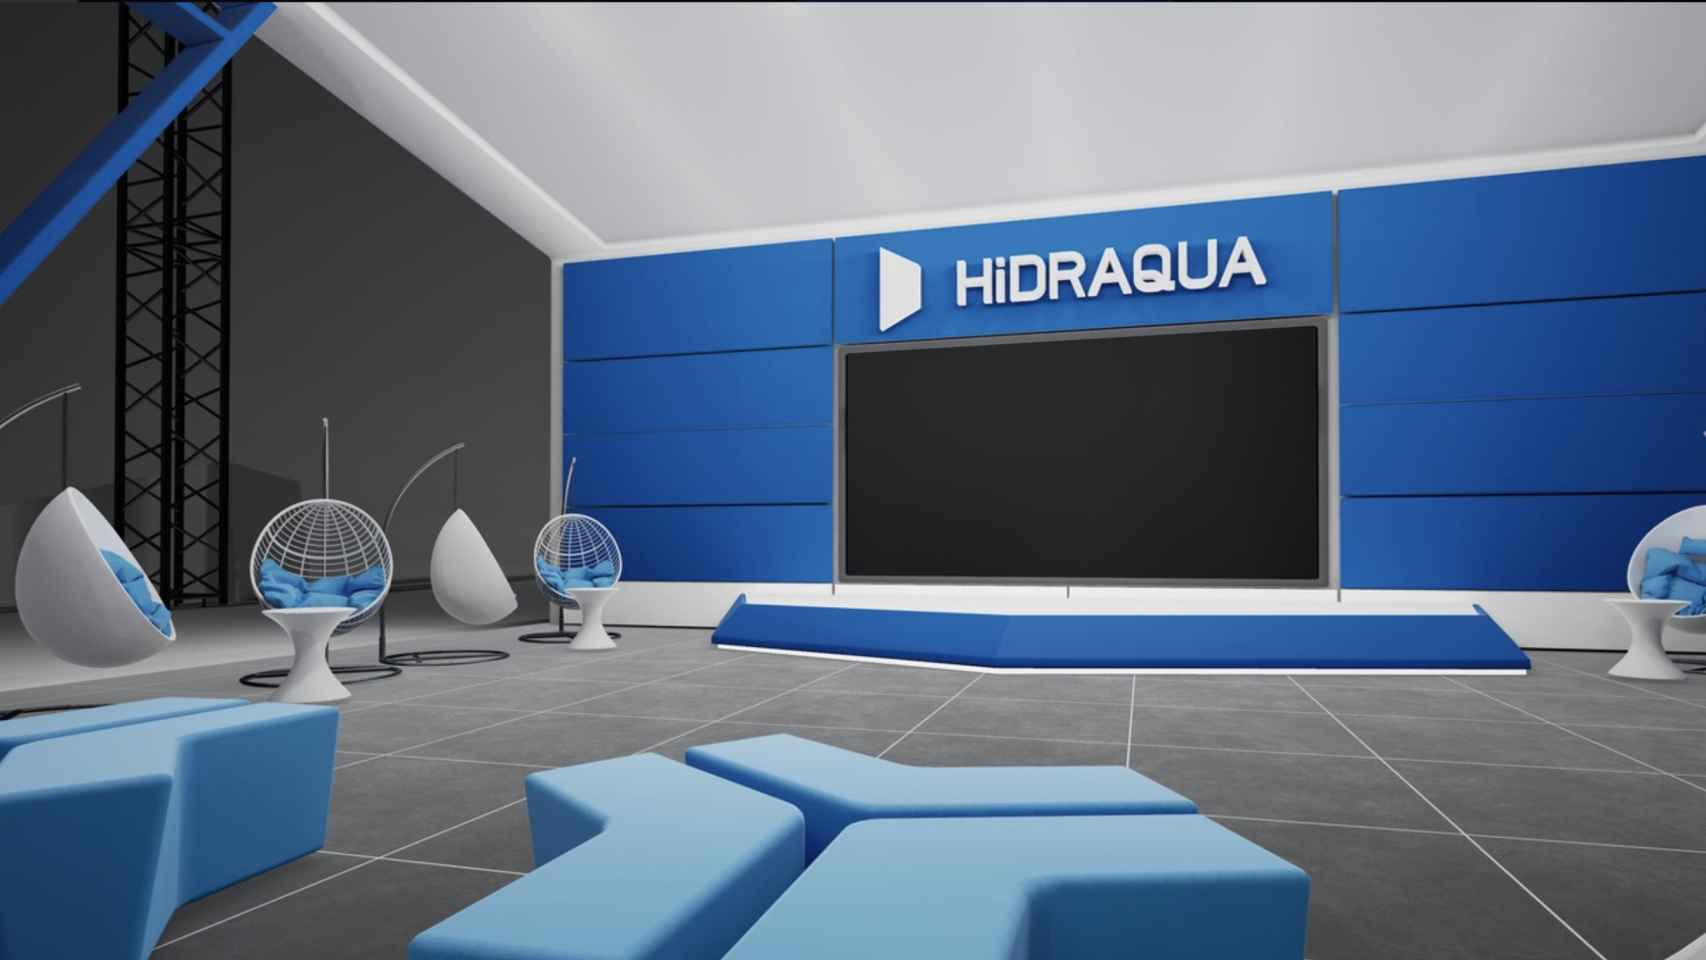 Oficina virtual de Hidraqua en el Metaverso. EE